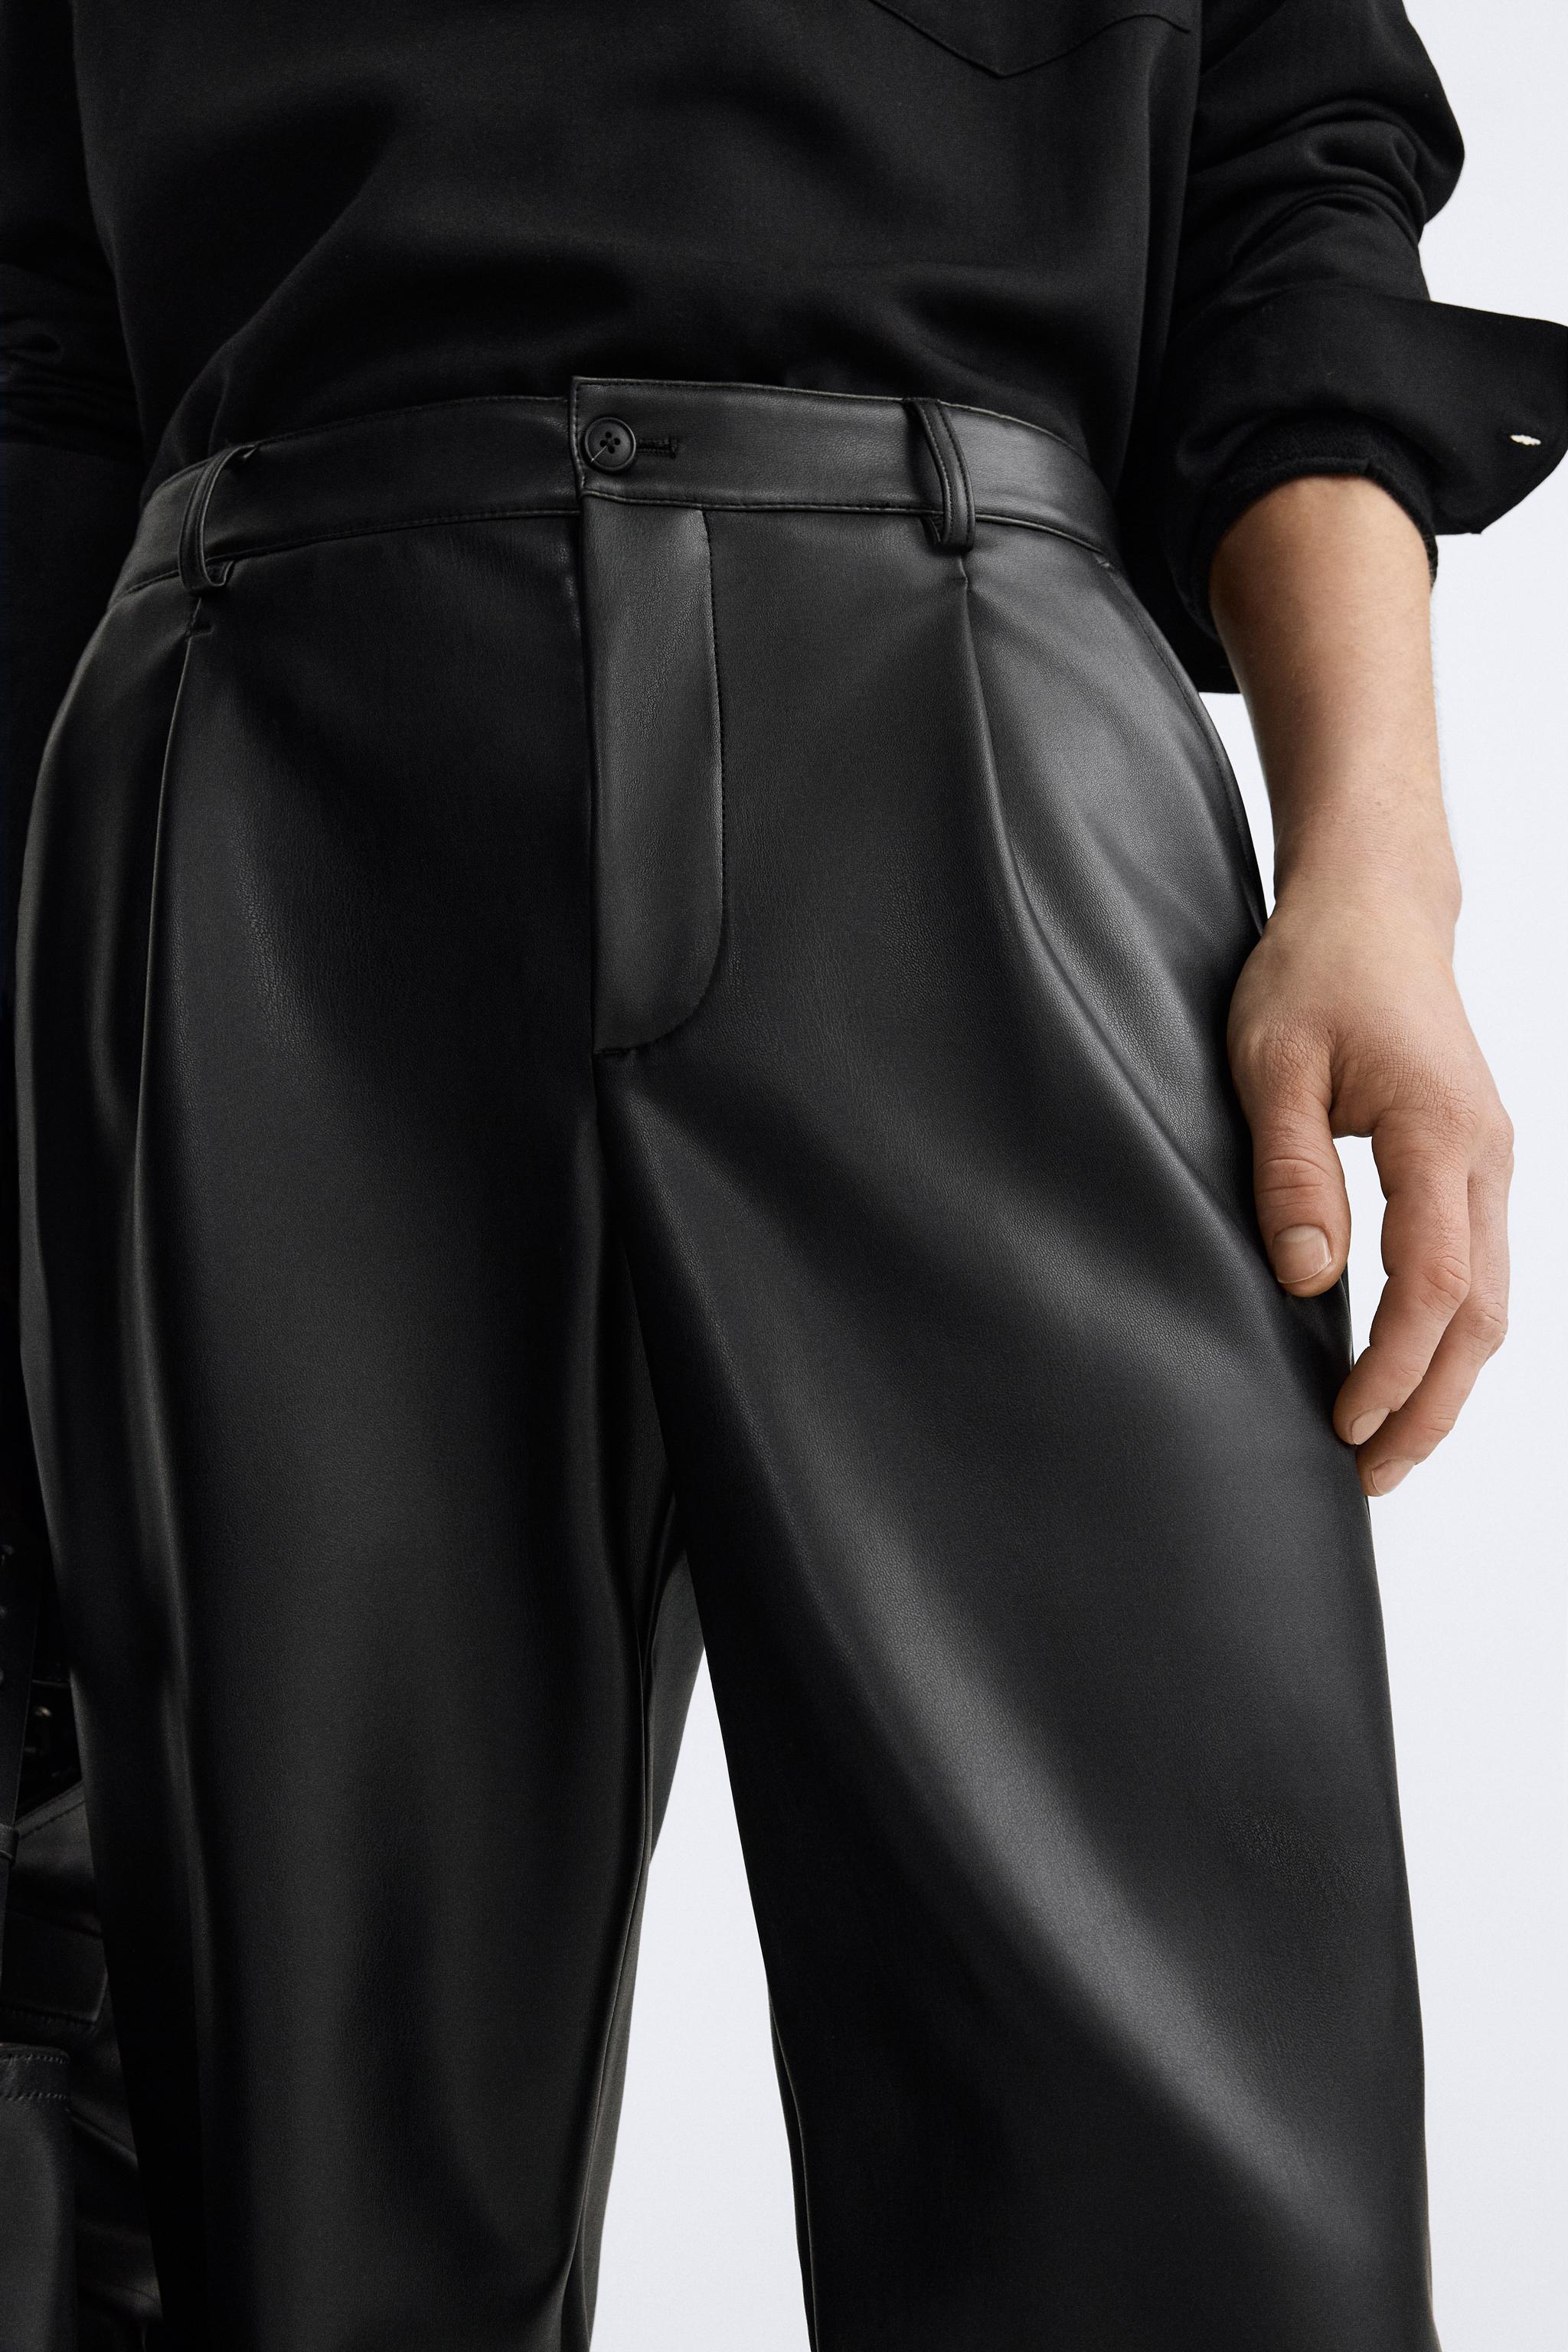 Zara Women Faux leather leggings 9815/235/800 (Medium): Buy Online at Best  Price in UAE 